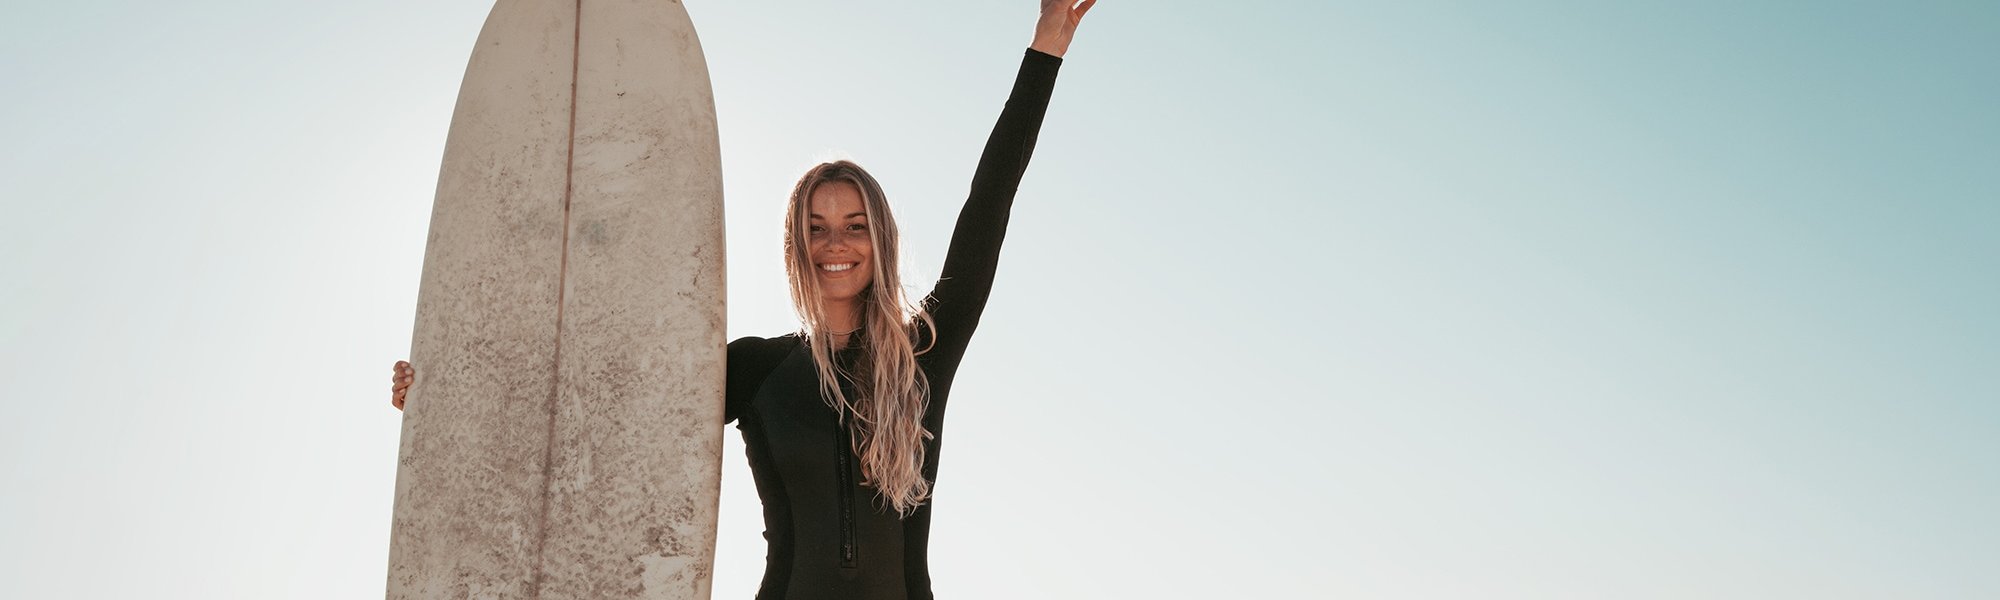 Junge Frau mit blonden Haaren am Strand mit einem Surfbrett in der Hand